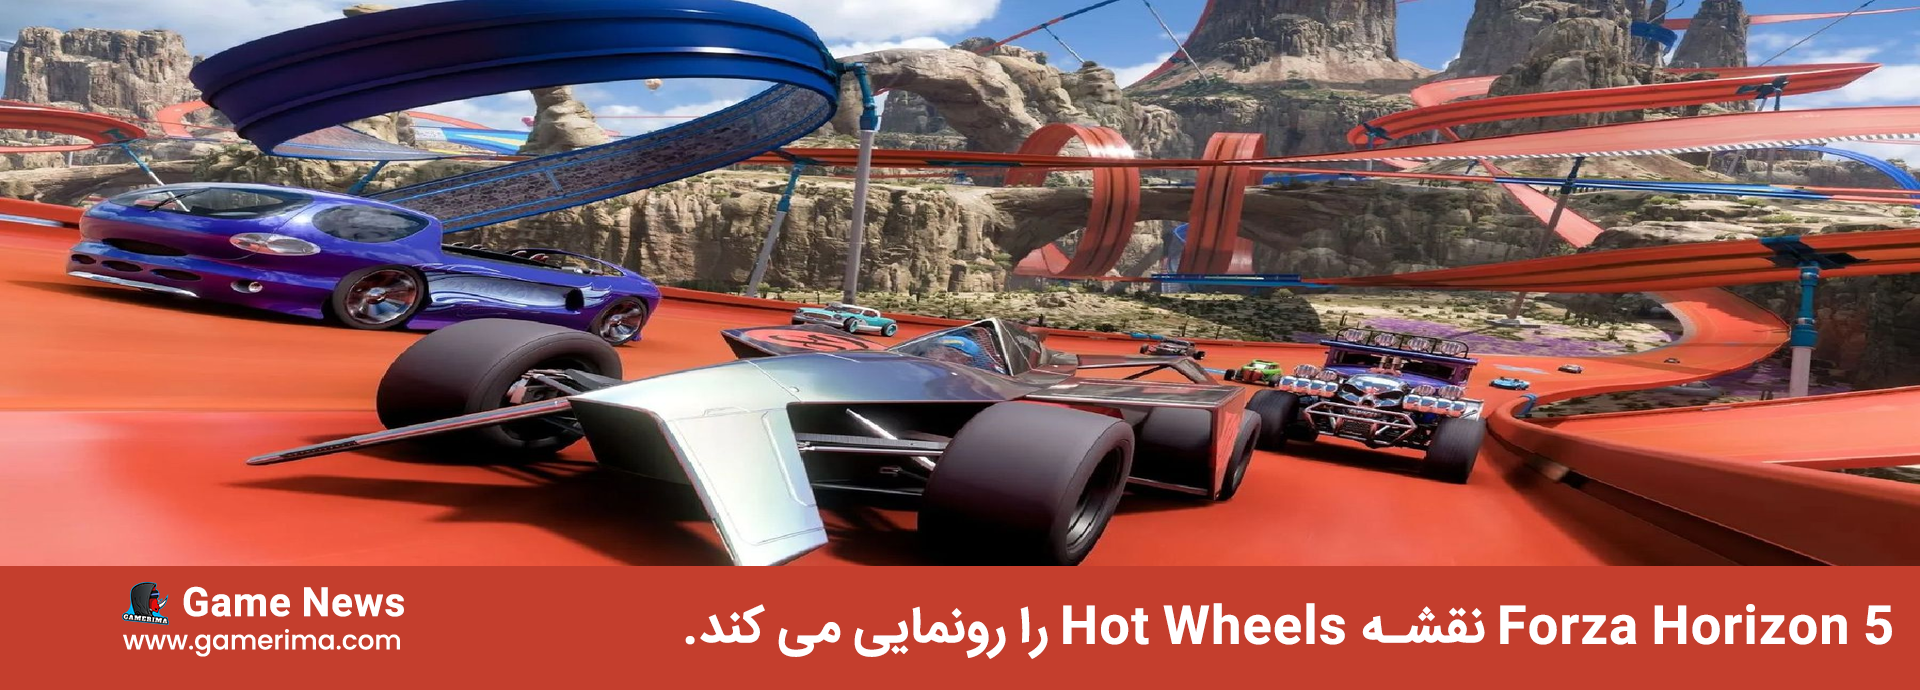 Forza Horizon 5 نقشه Hot Wheels را رونمایی می کند.